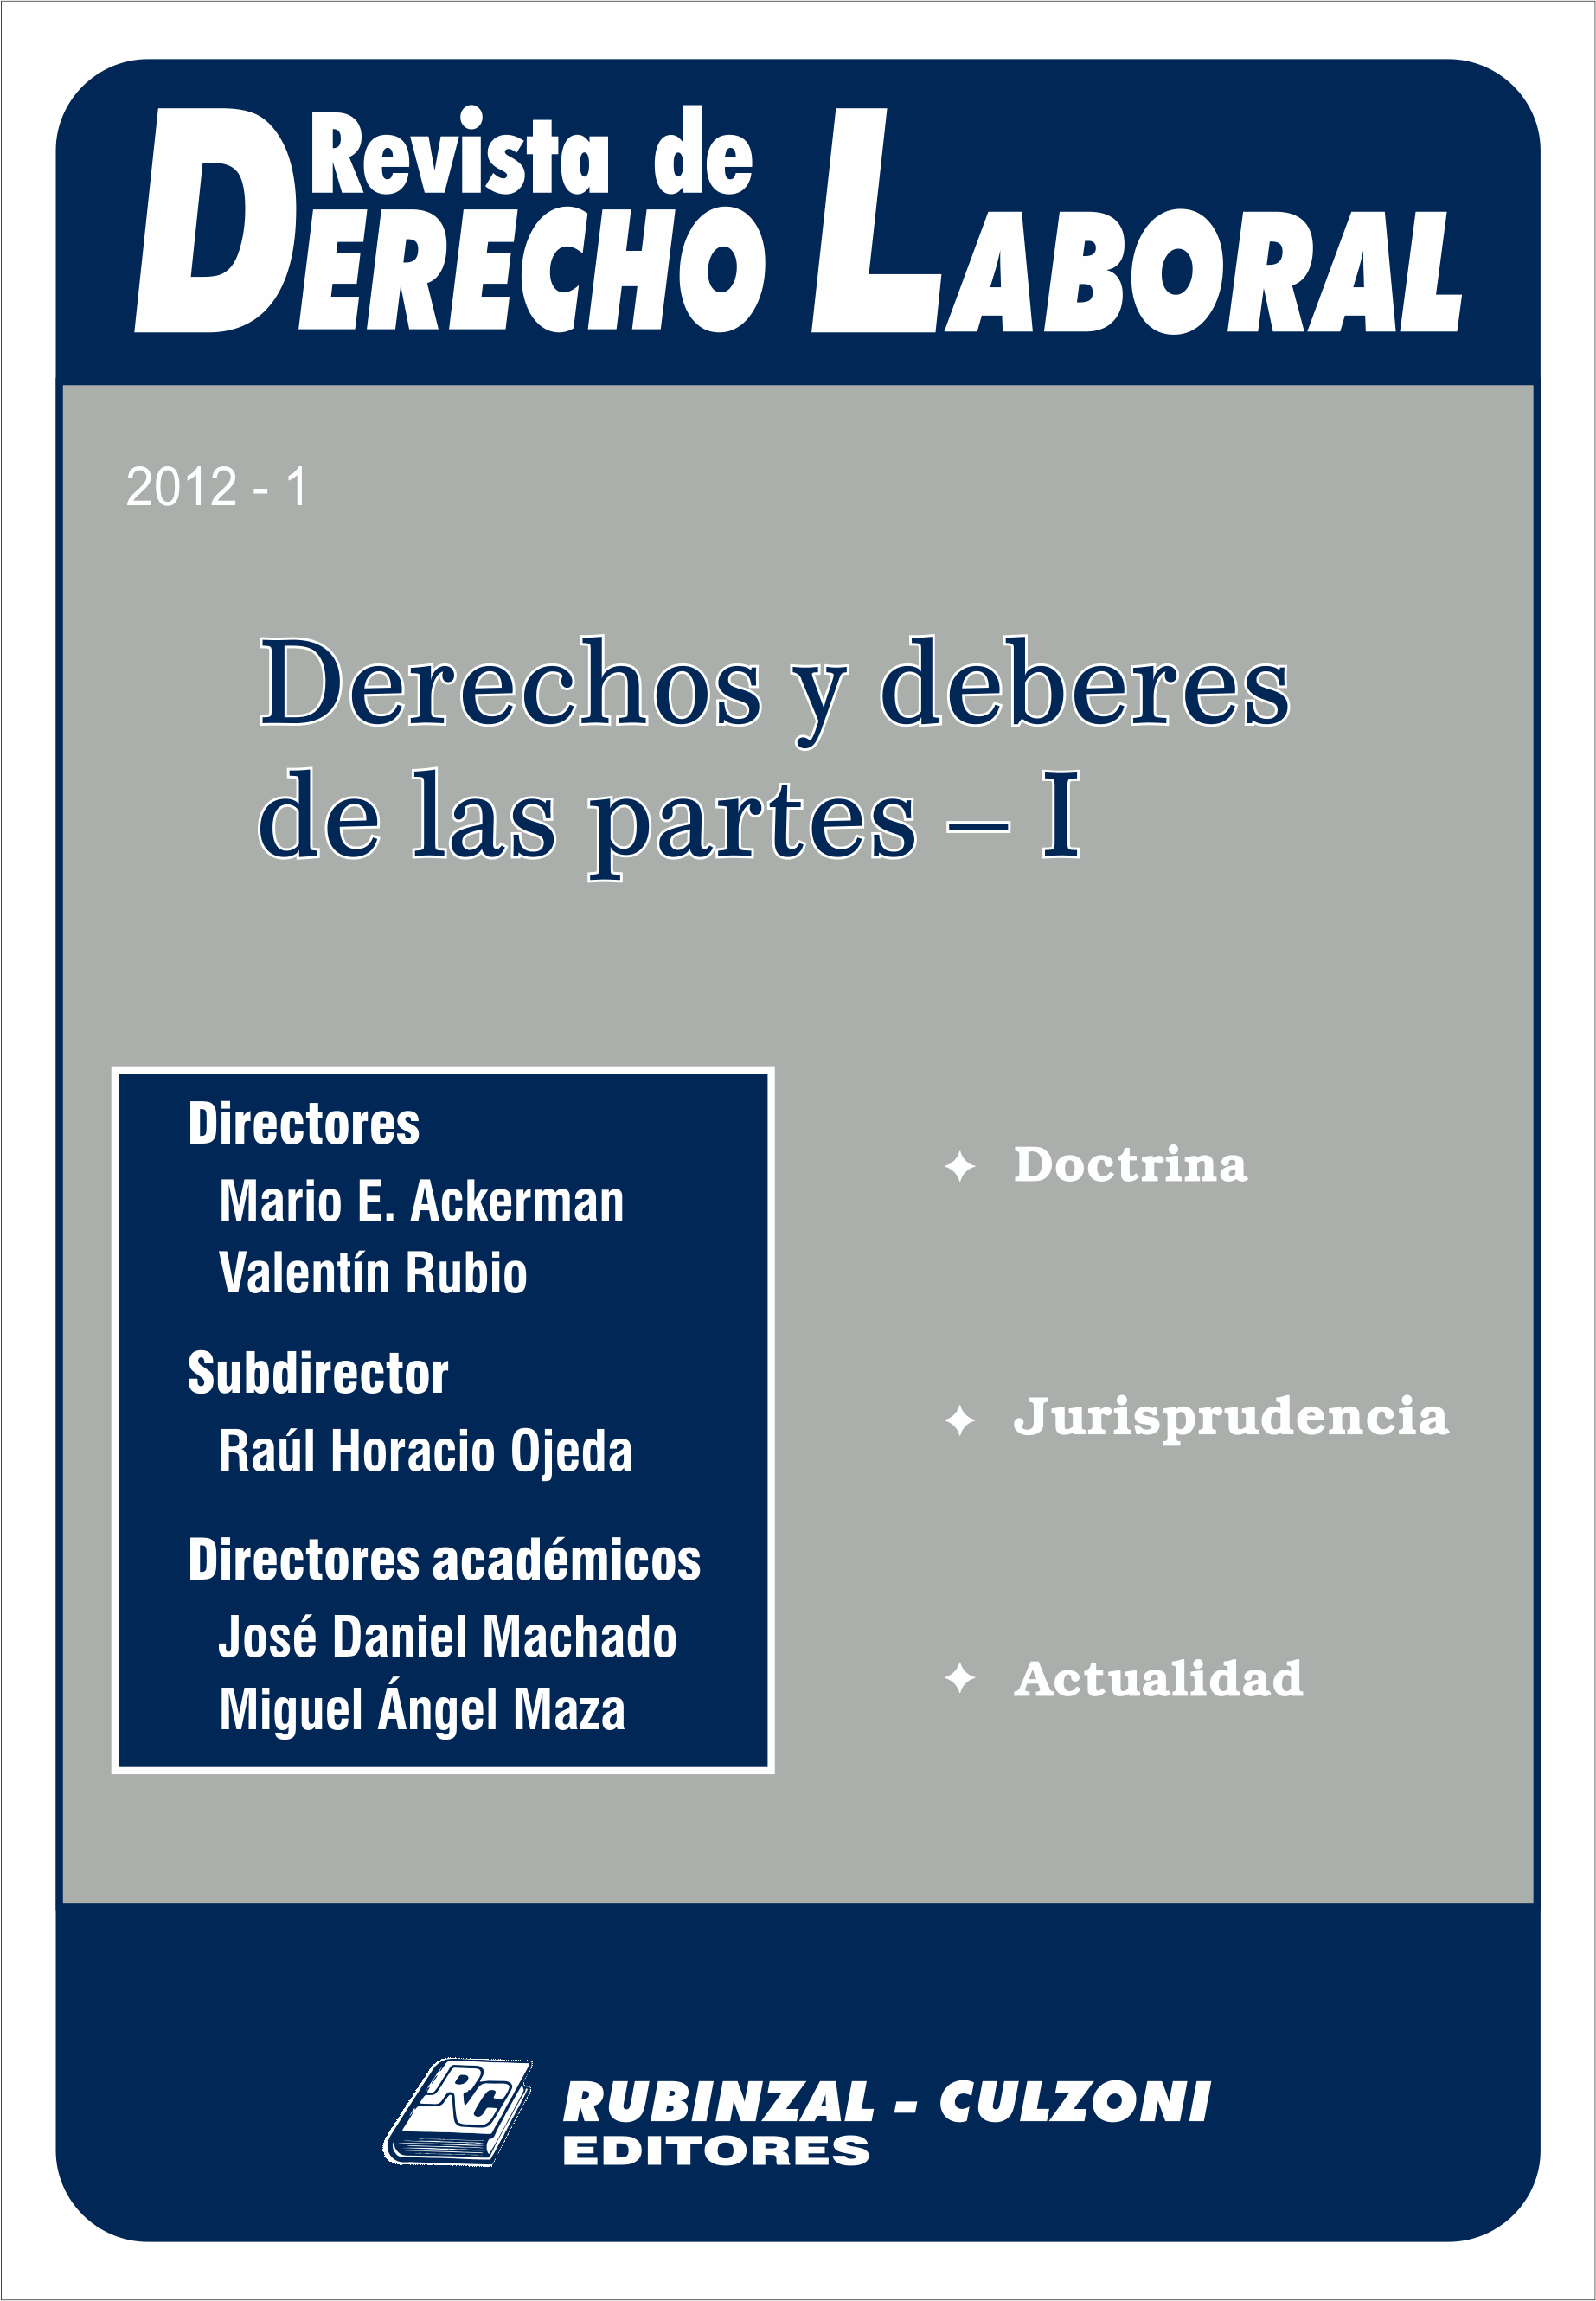 Revista de Derecho Laboral - Derechos y deberes de las partes - I